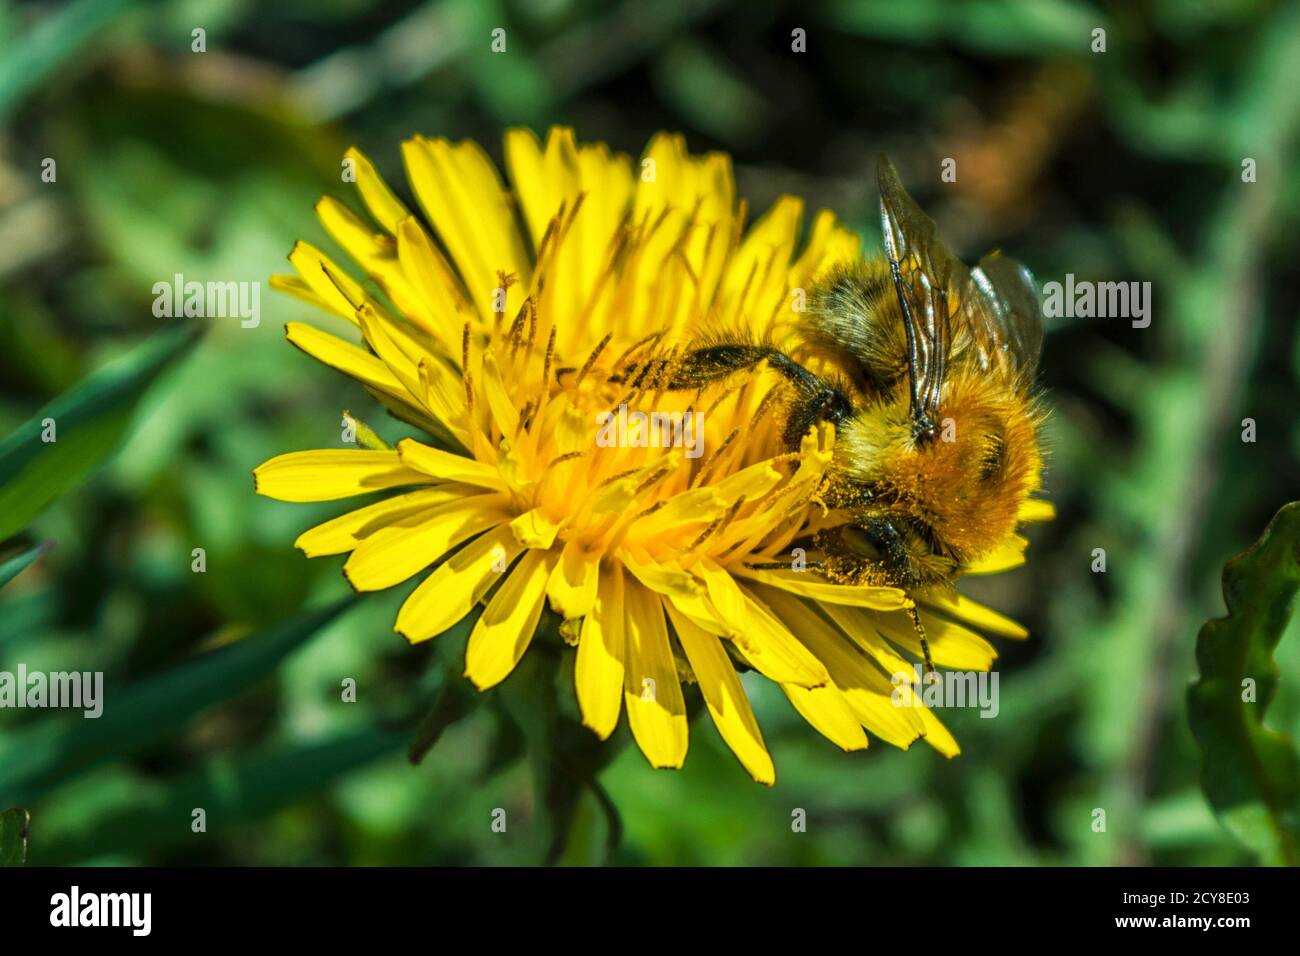 Honigbiene sammelt Pollen und Nektar aus gelb blühenden Löwenzahnblüten. Rettung Bienen und Honig Blumen Ökologie Problem Konzept Stockfoto